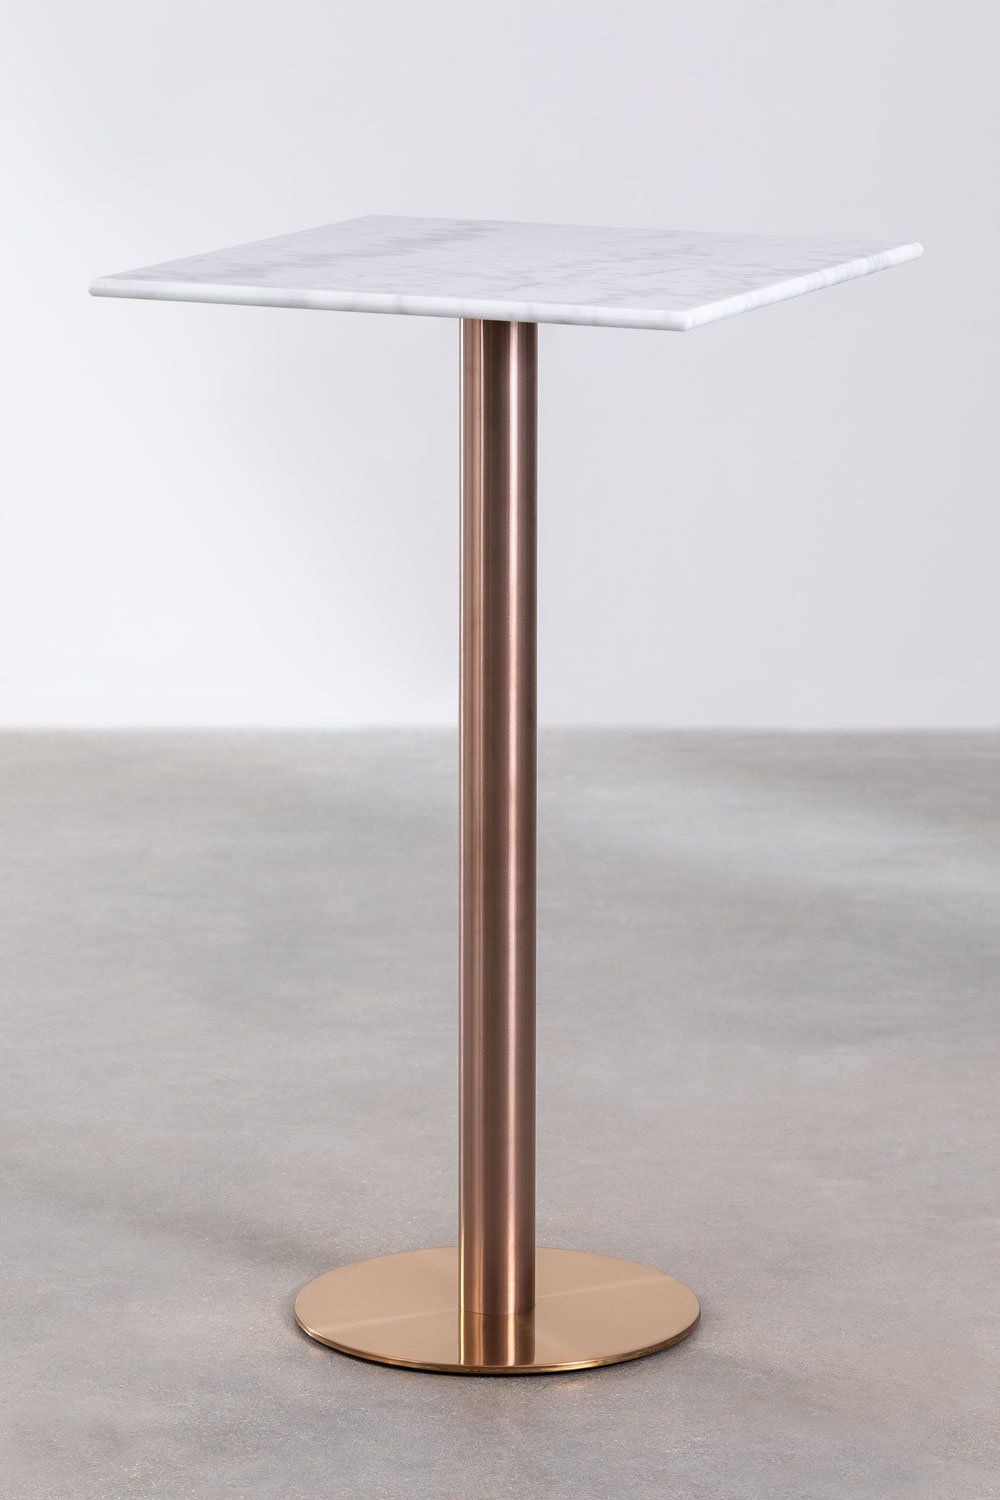 Wysoki kwadratowy stół barowy z marmuru (60x60 cm) Cosmopolitan, obrazek w galerii 1